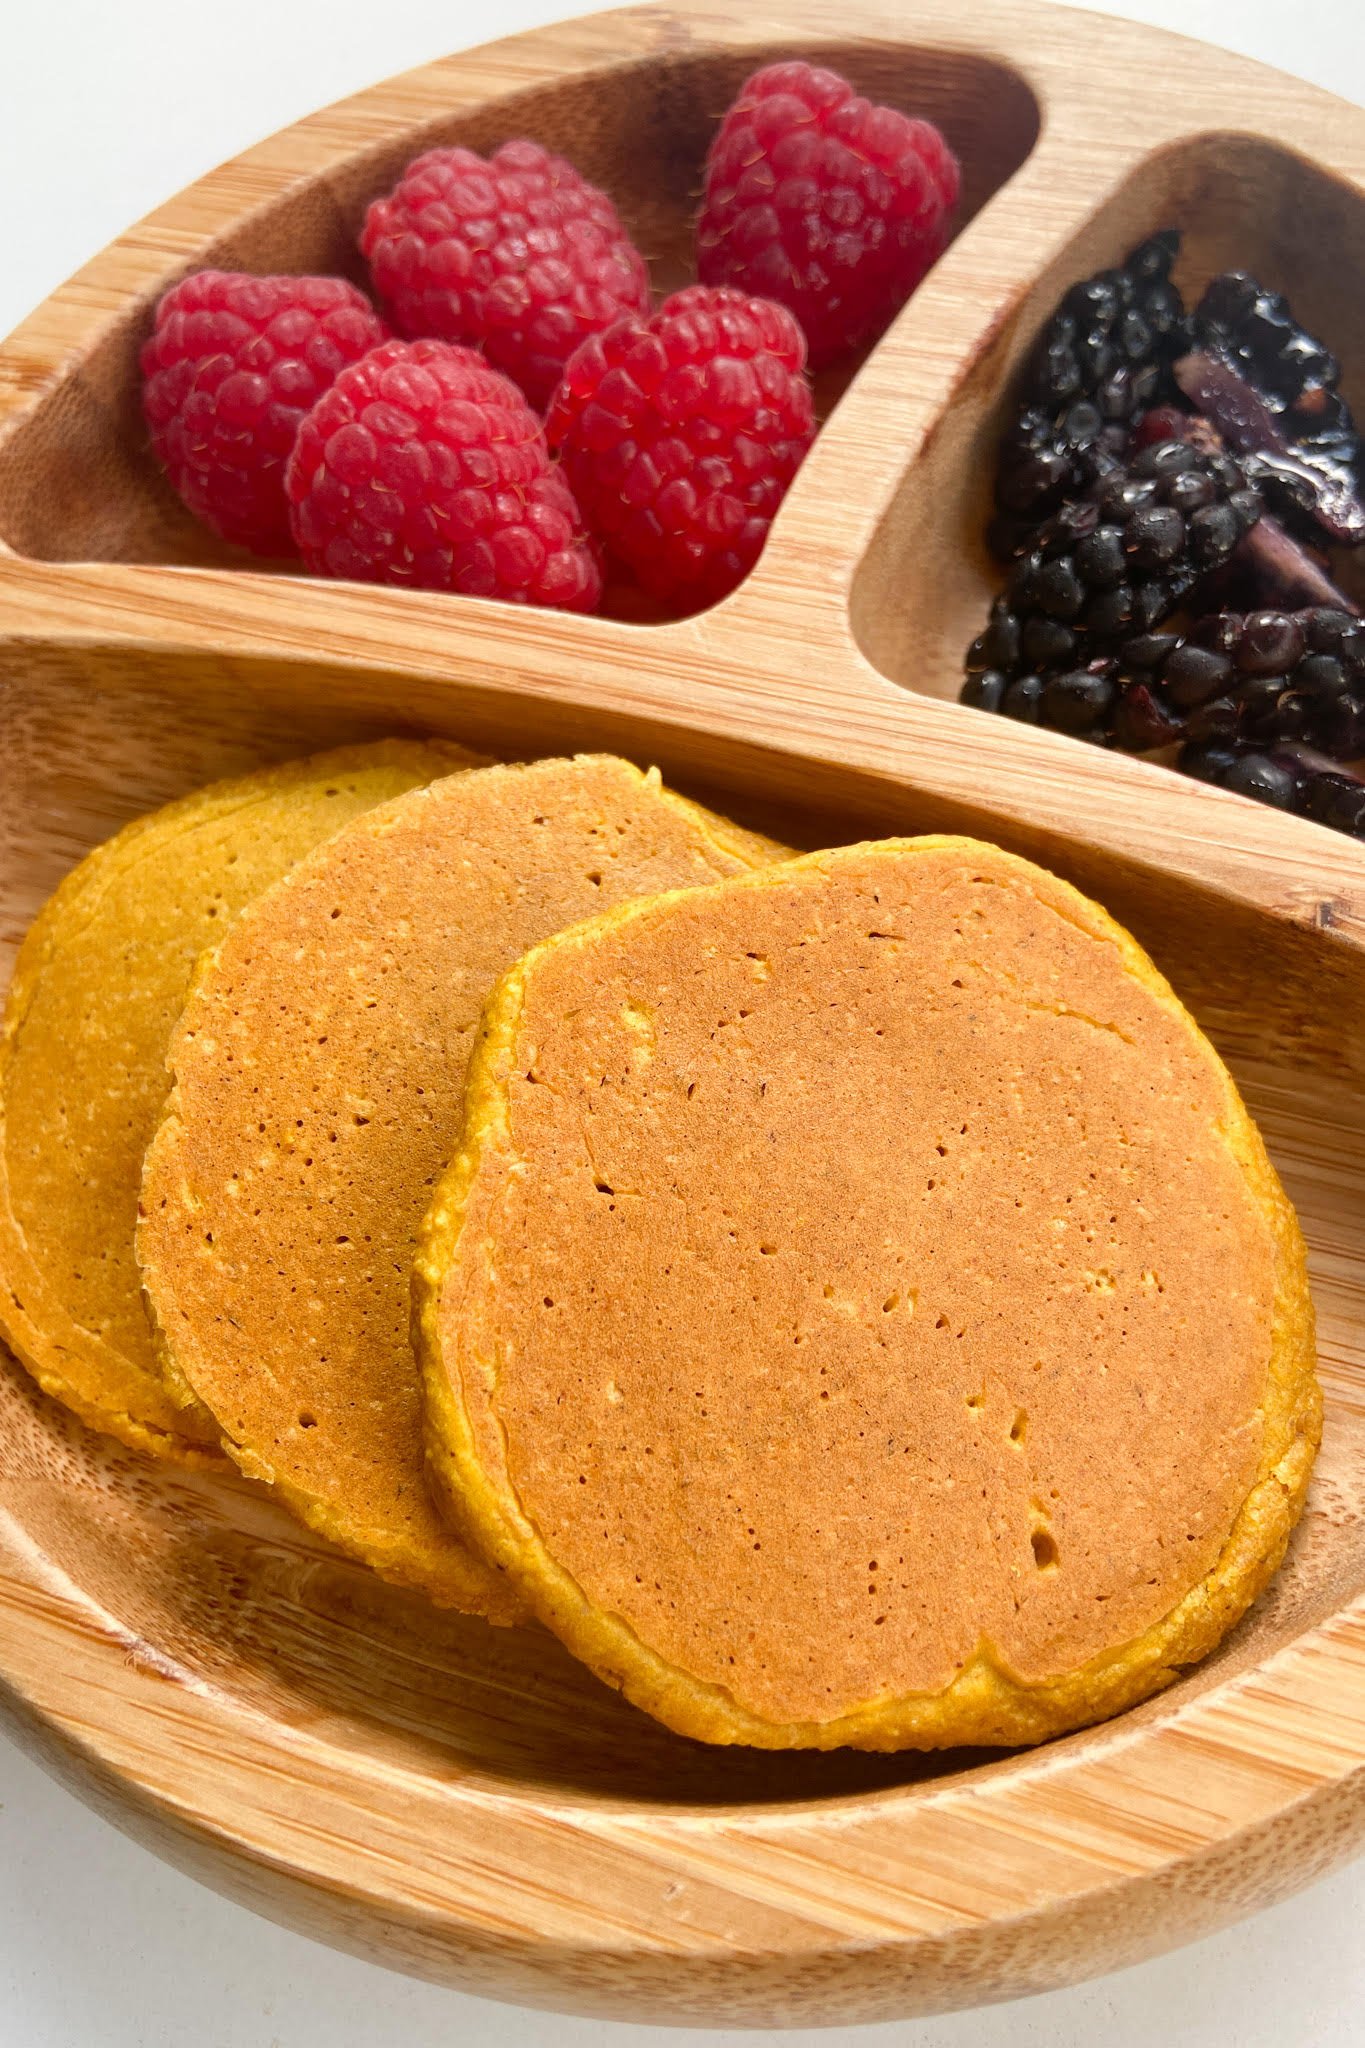 Pumpkin pancakes served with raspberries and blackberries